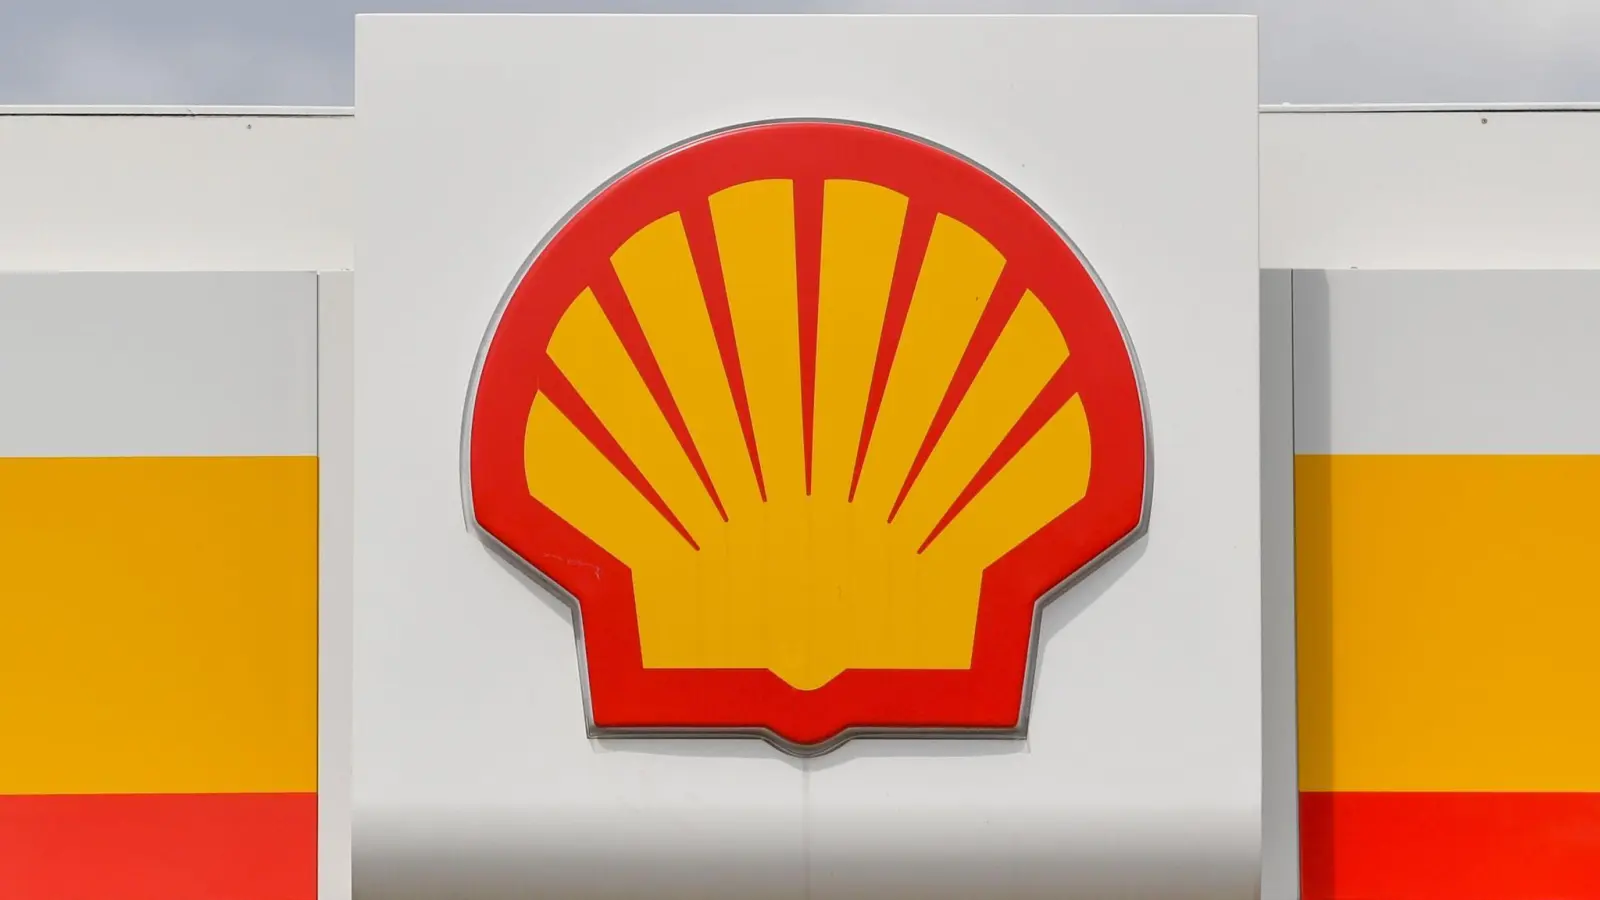 Der Ölriese Shell hat seinen Gewinn innerhalb eines Jahres etwa verdoppelt. (Foto: Patrick Pleul/dpa-Zentralbild/dpa)